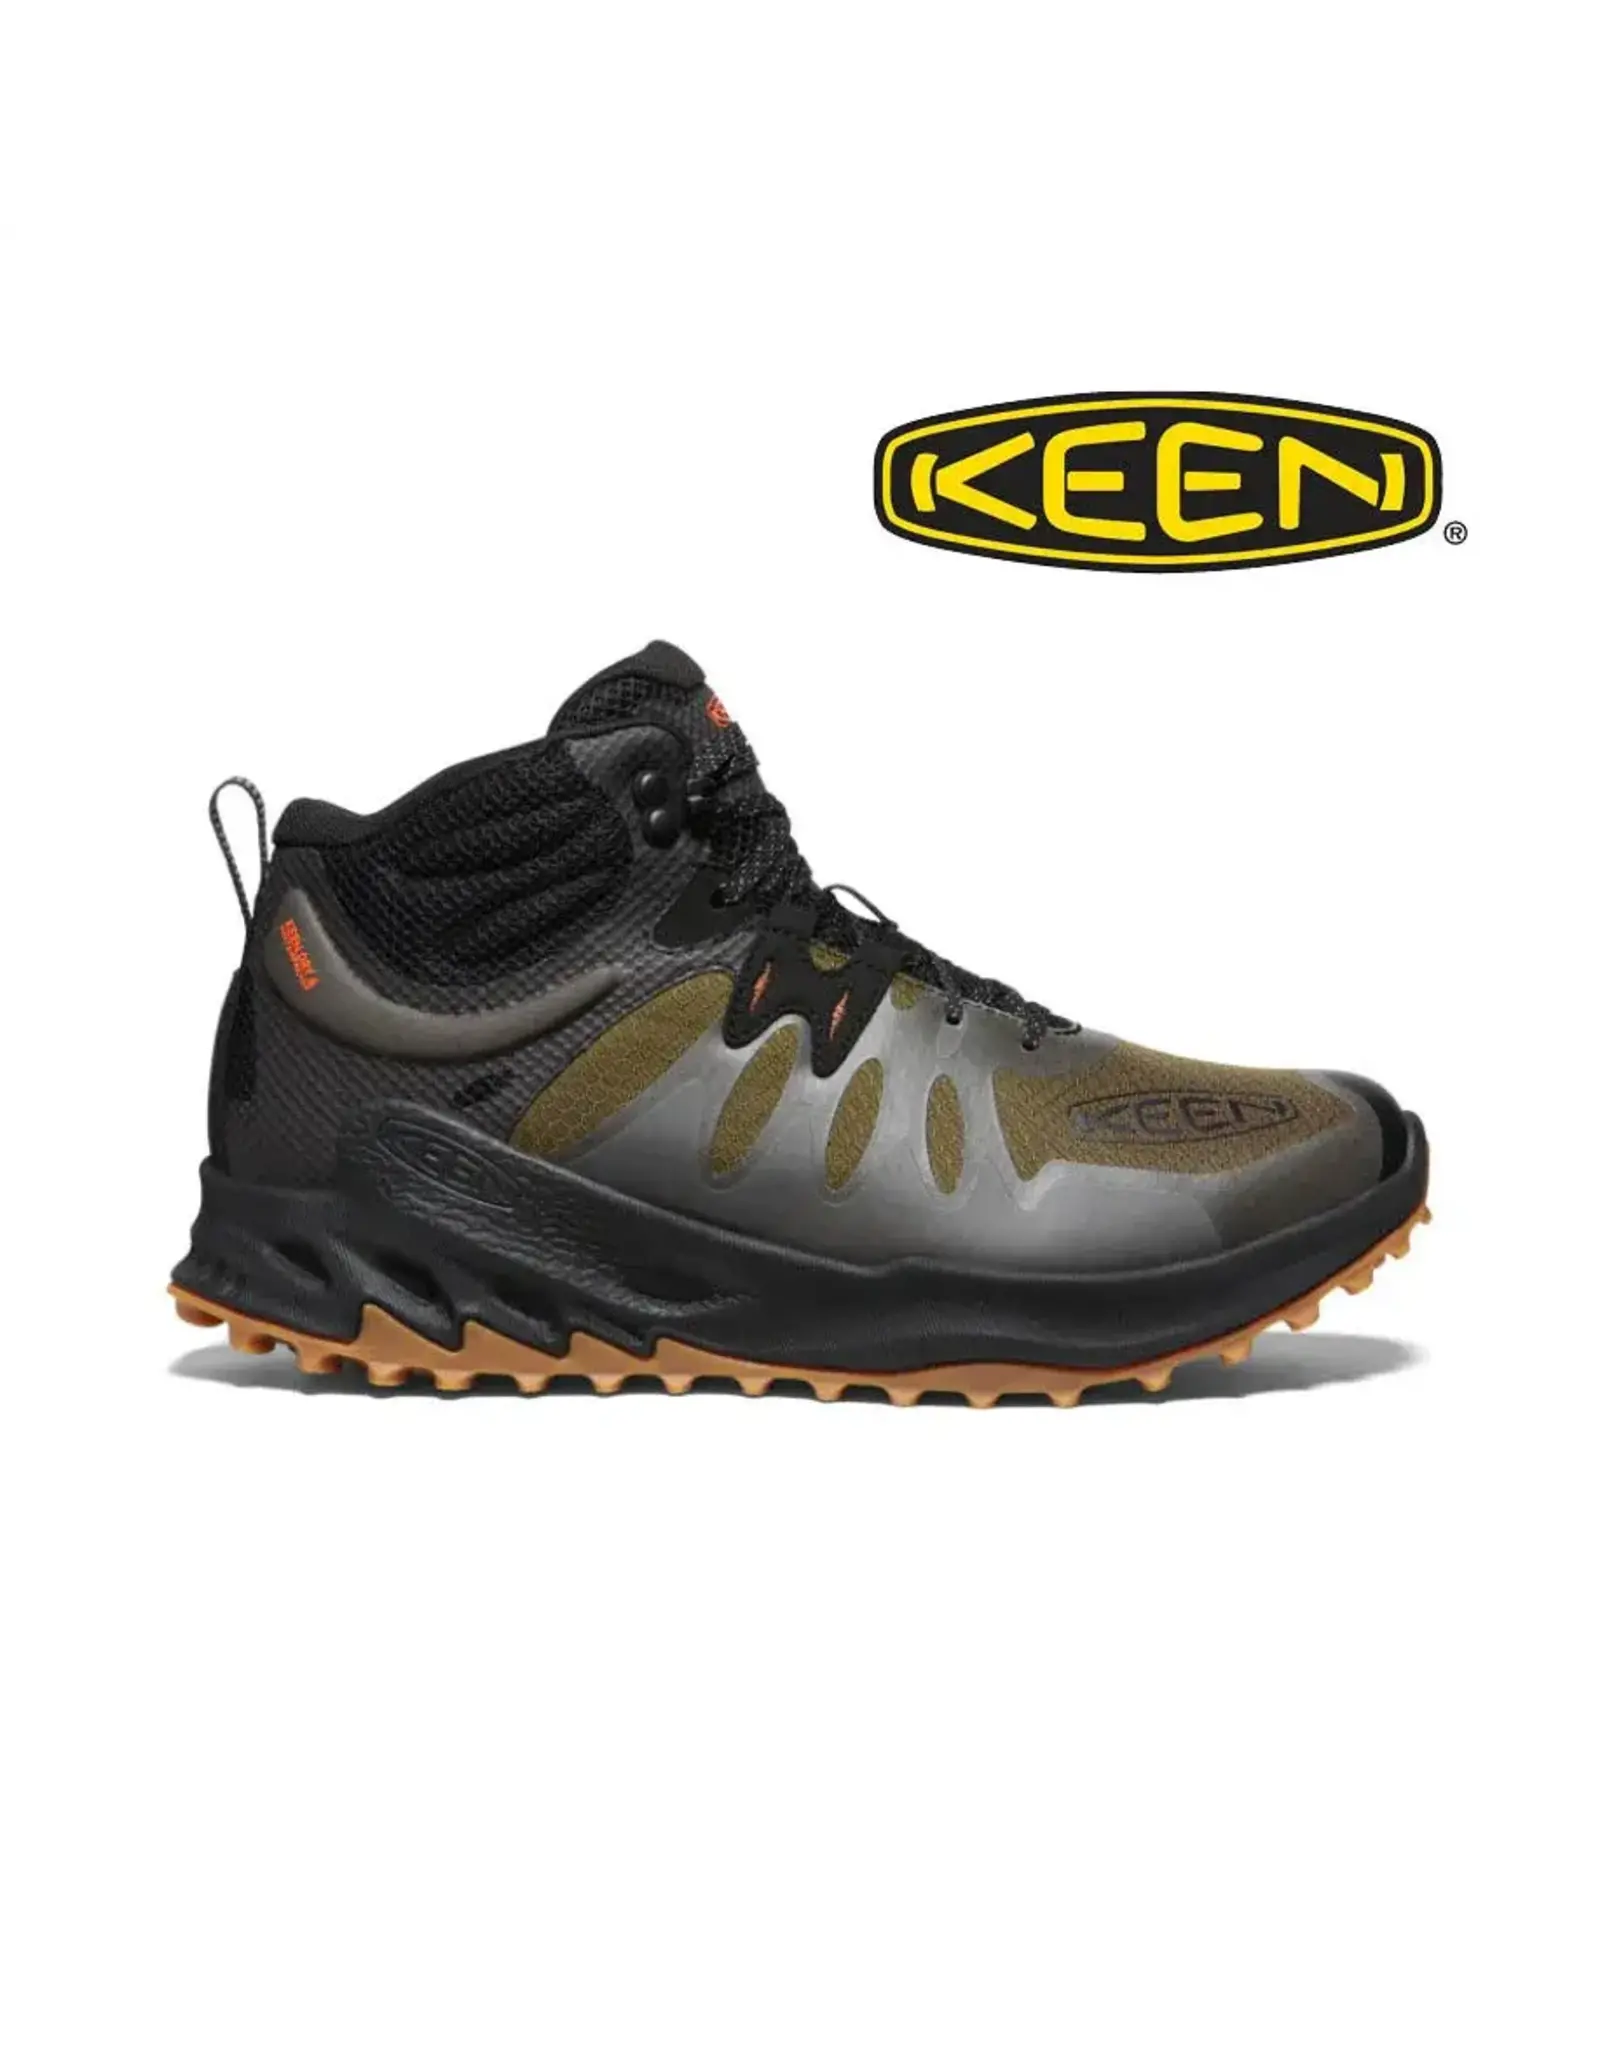 Keen Keen Men’s Outdoor Zionic Mid Waterproof Dark Olive/Scarlet Ibis 1028035 Casual Sneaker Shoes